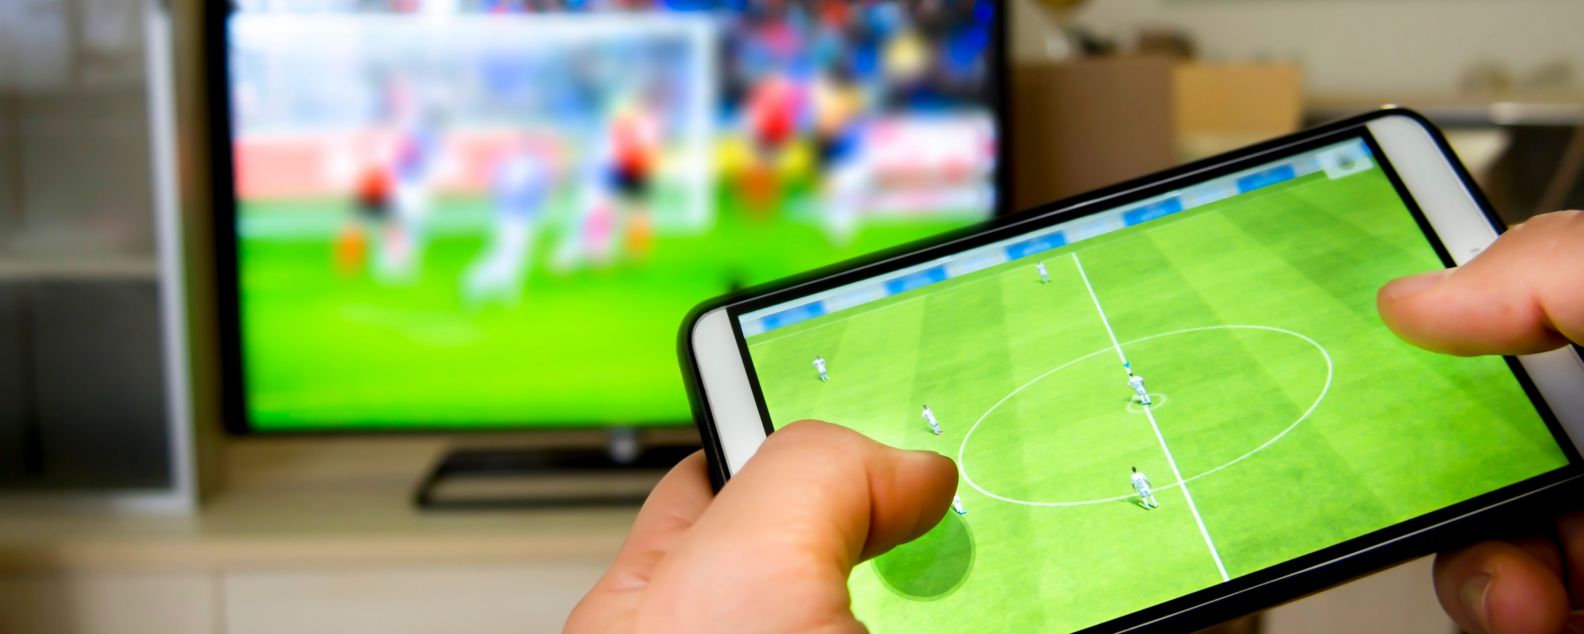 在电视上观看比赛时通过移动设备参与足球比赛互动的人